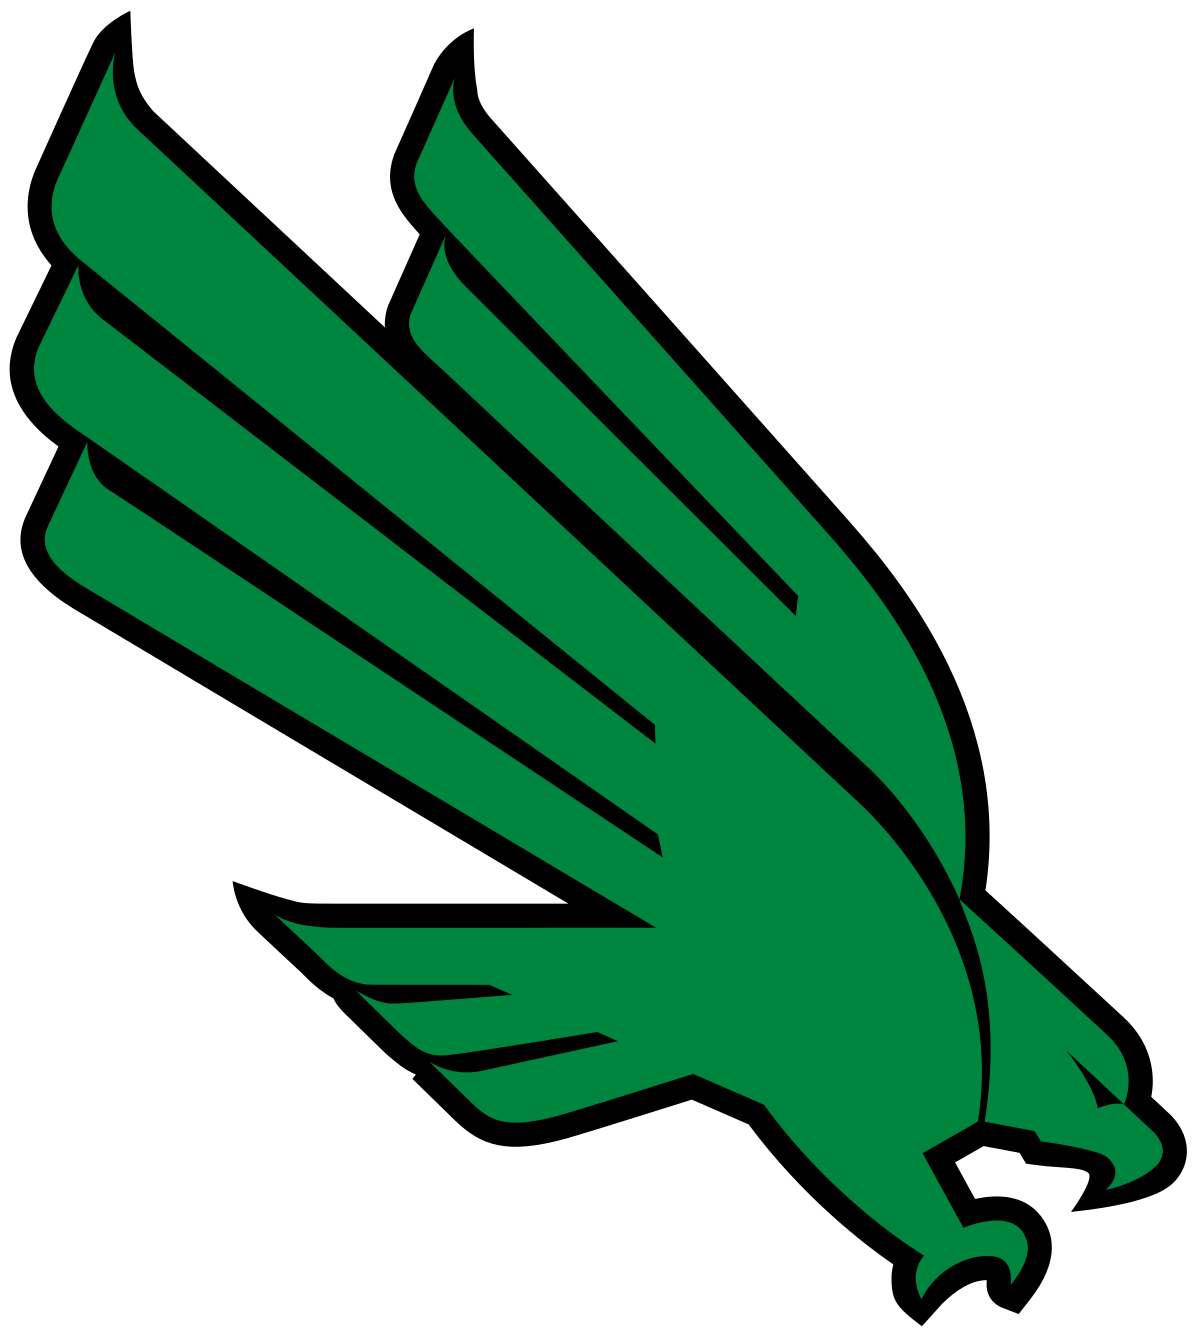 UNT Logo - North Texas Mean Green